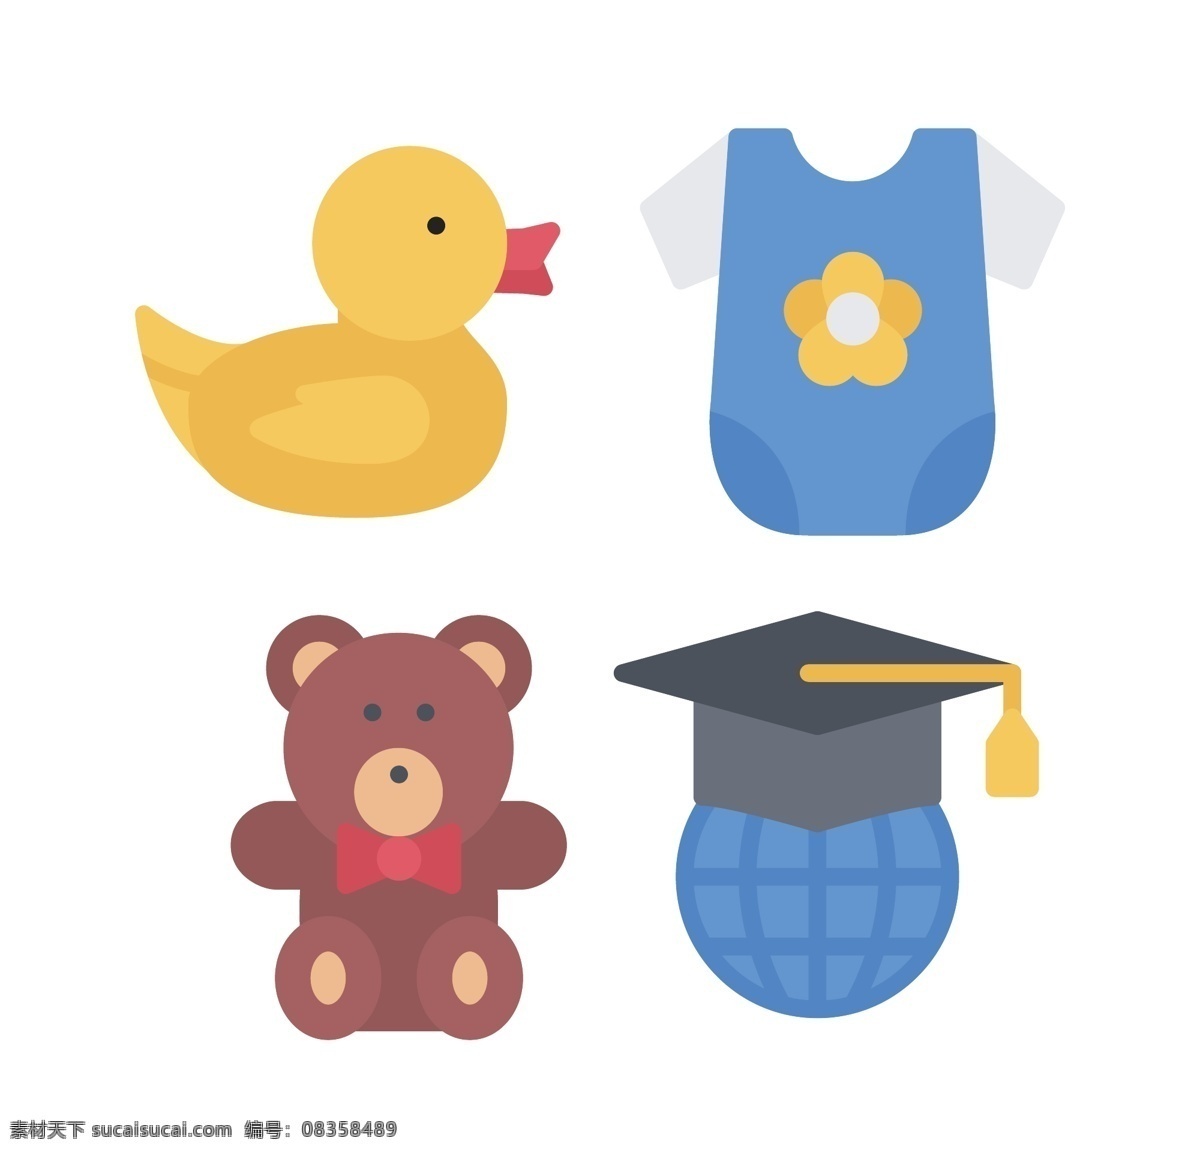 幼儿园 icon 图标素材 卡通图案 鸭子 玩具熊 商务卡通图案 矢量图 图案素材 扁平化矢量 图案